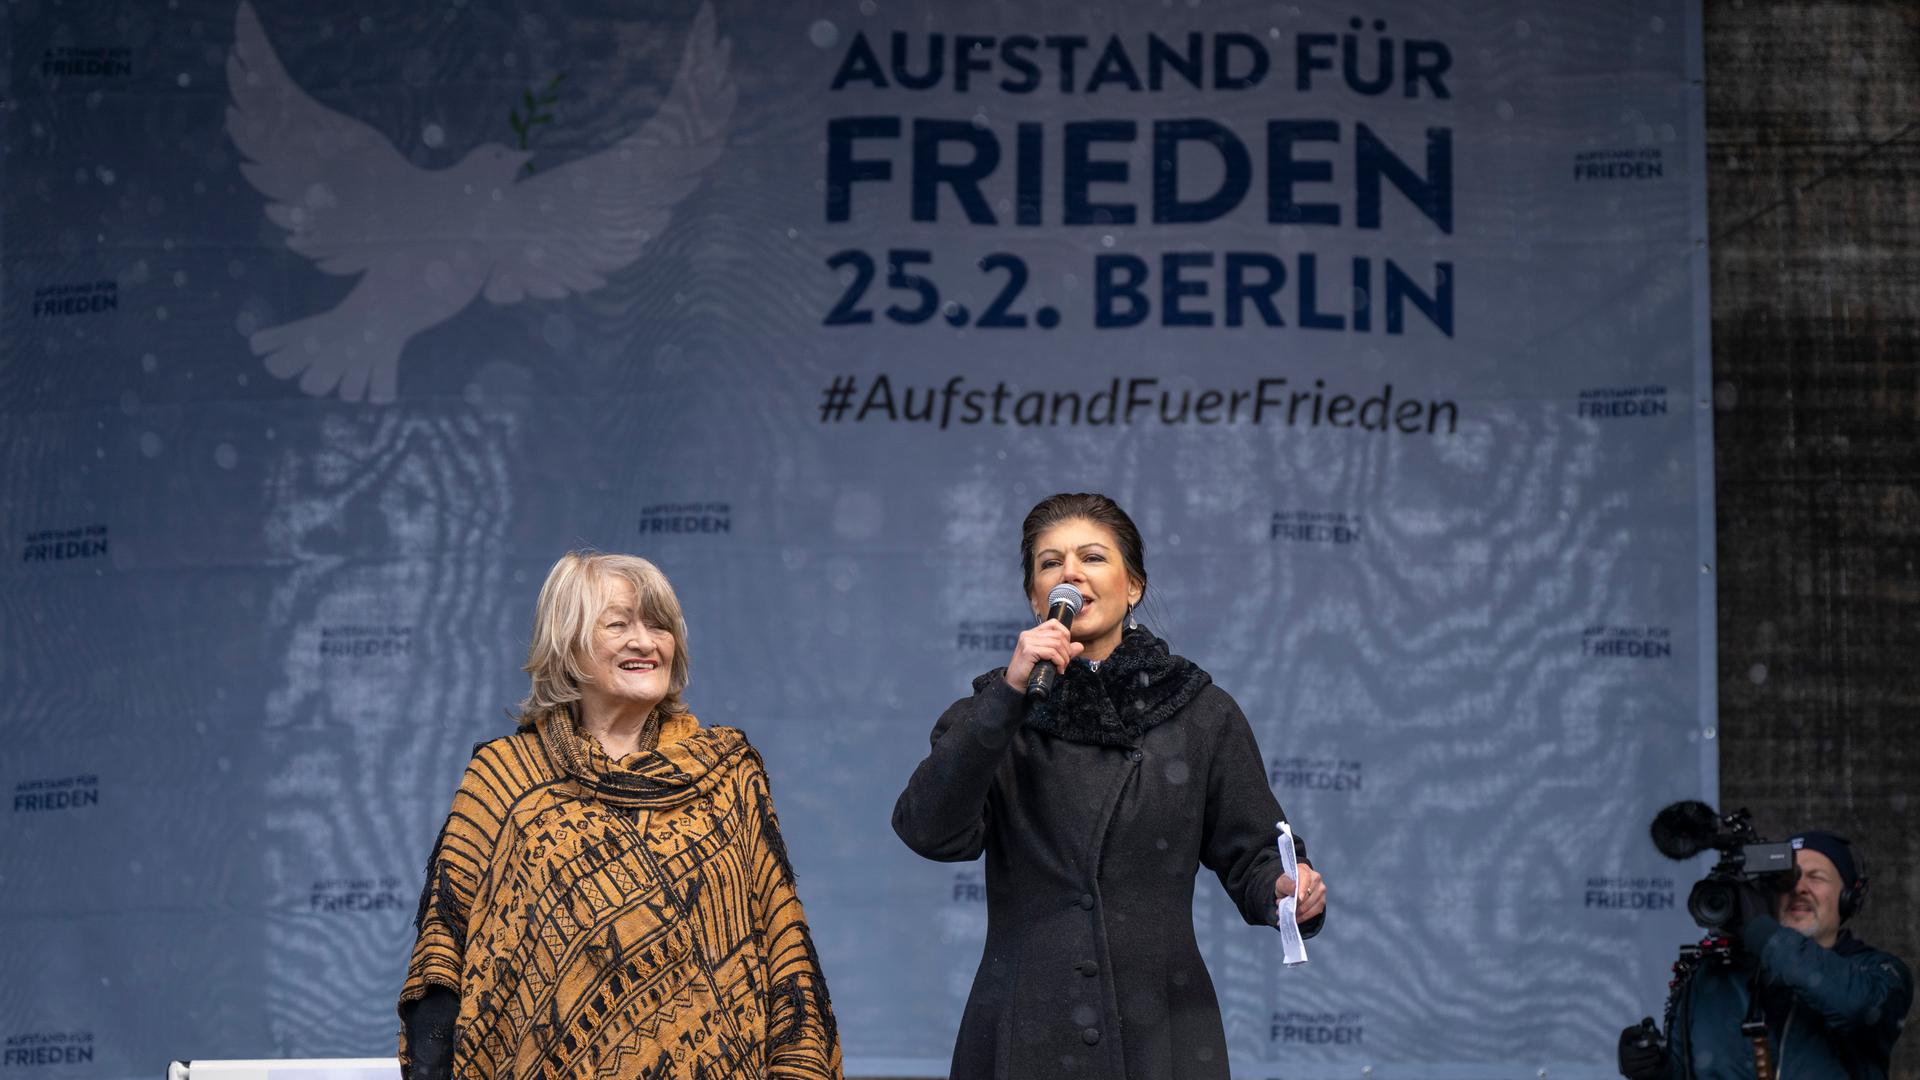 Alice Schwarzer (l), Frauenrechtlerin, und Sahra Wagenknecht (Die Linke), stehen bei der Demonstration "Aufstand für den Frieden" auf der Bühne.